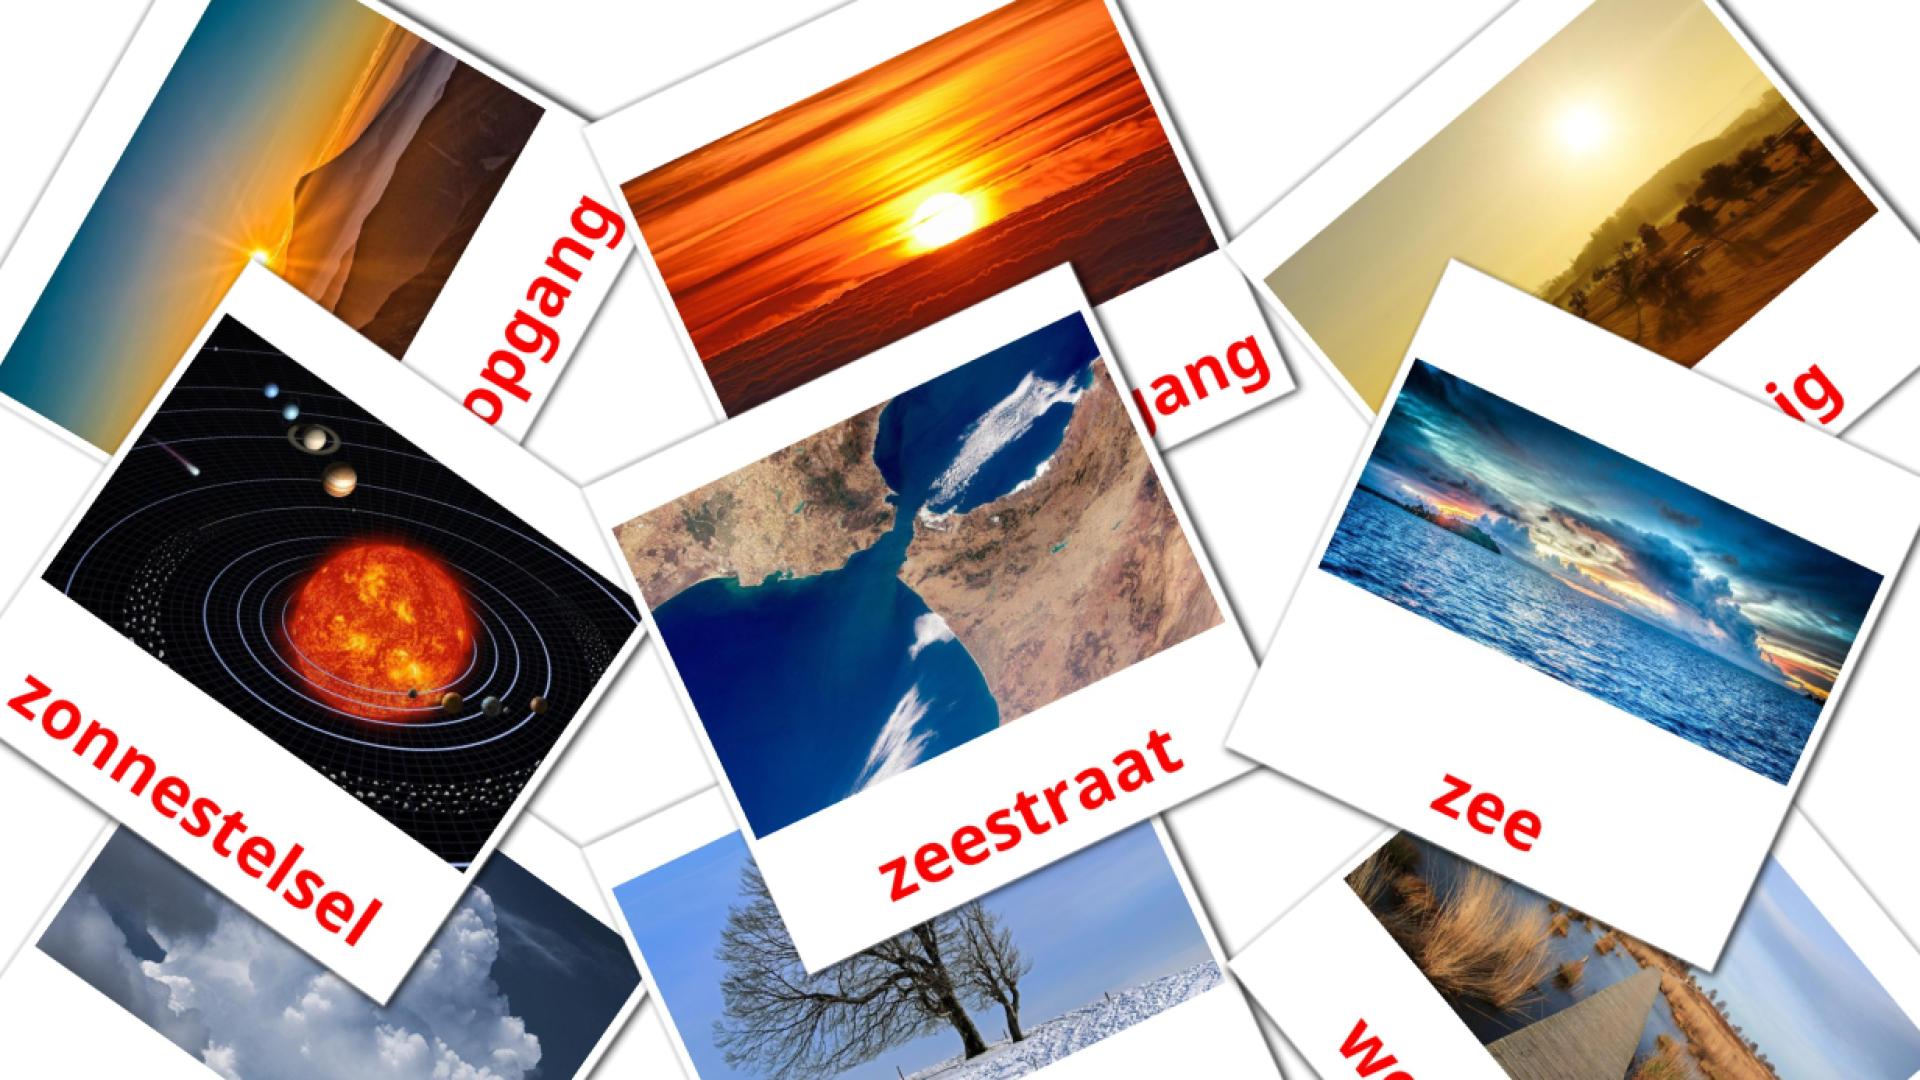 holandés tarjetas de vocabulario en Natuur